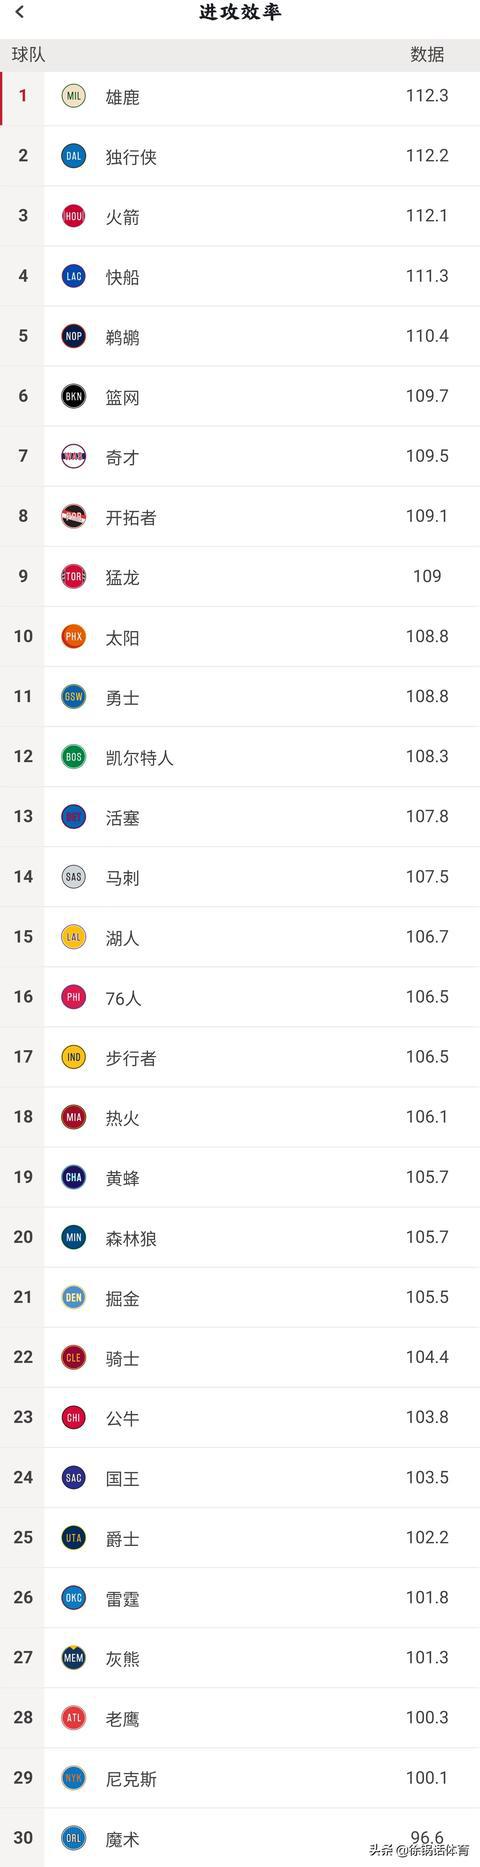 凯尔特人nba数据 NBA球队最新数据榜(2)